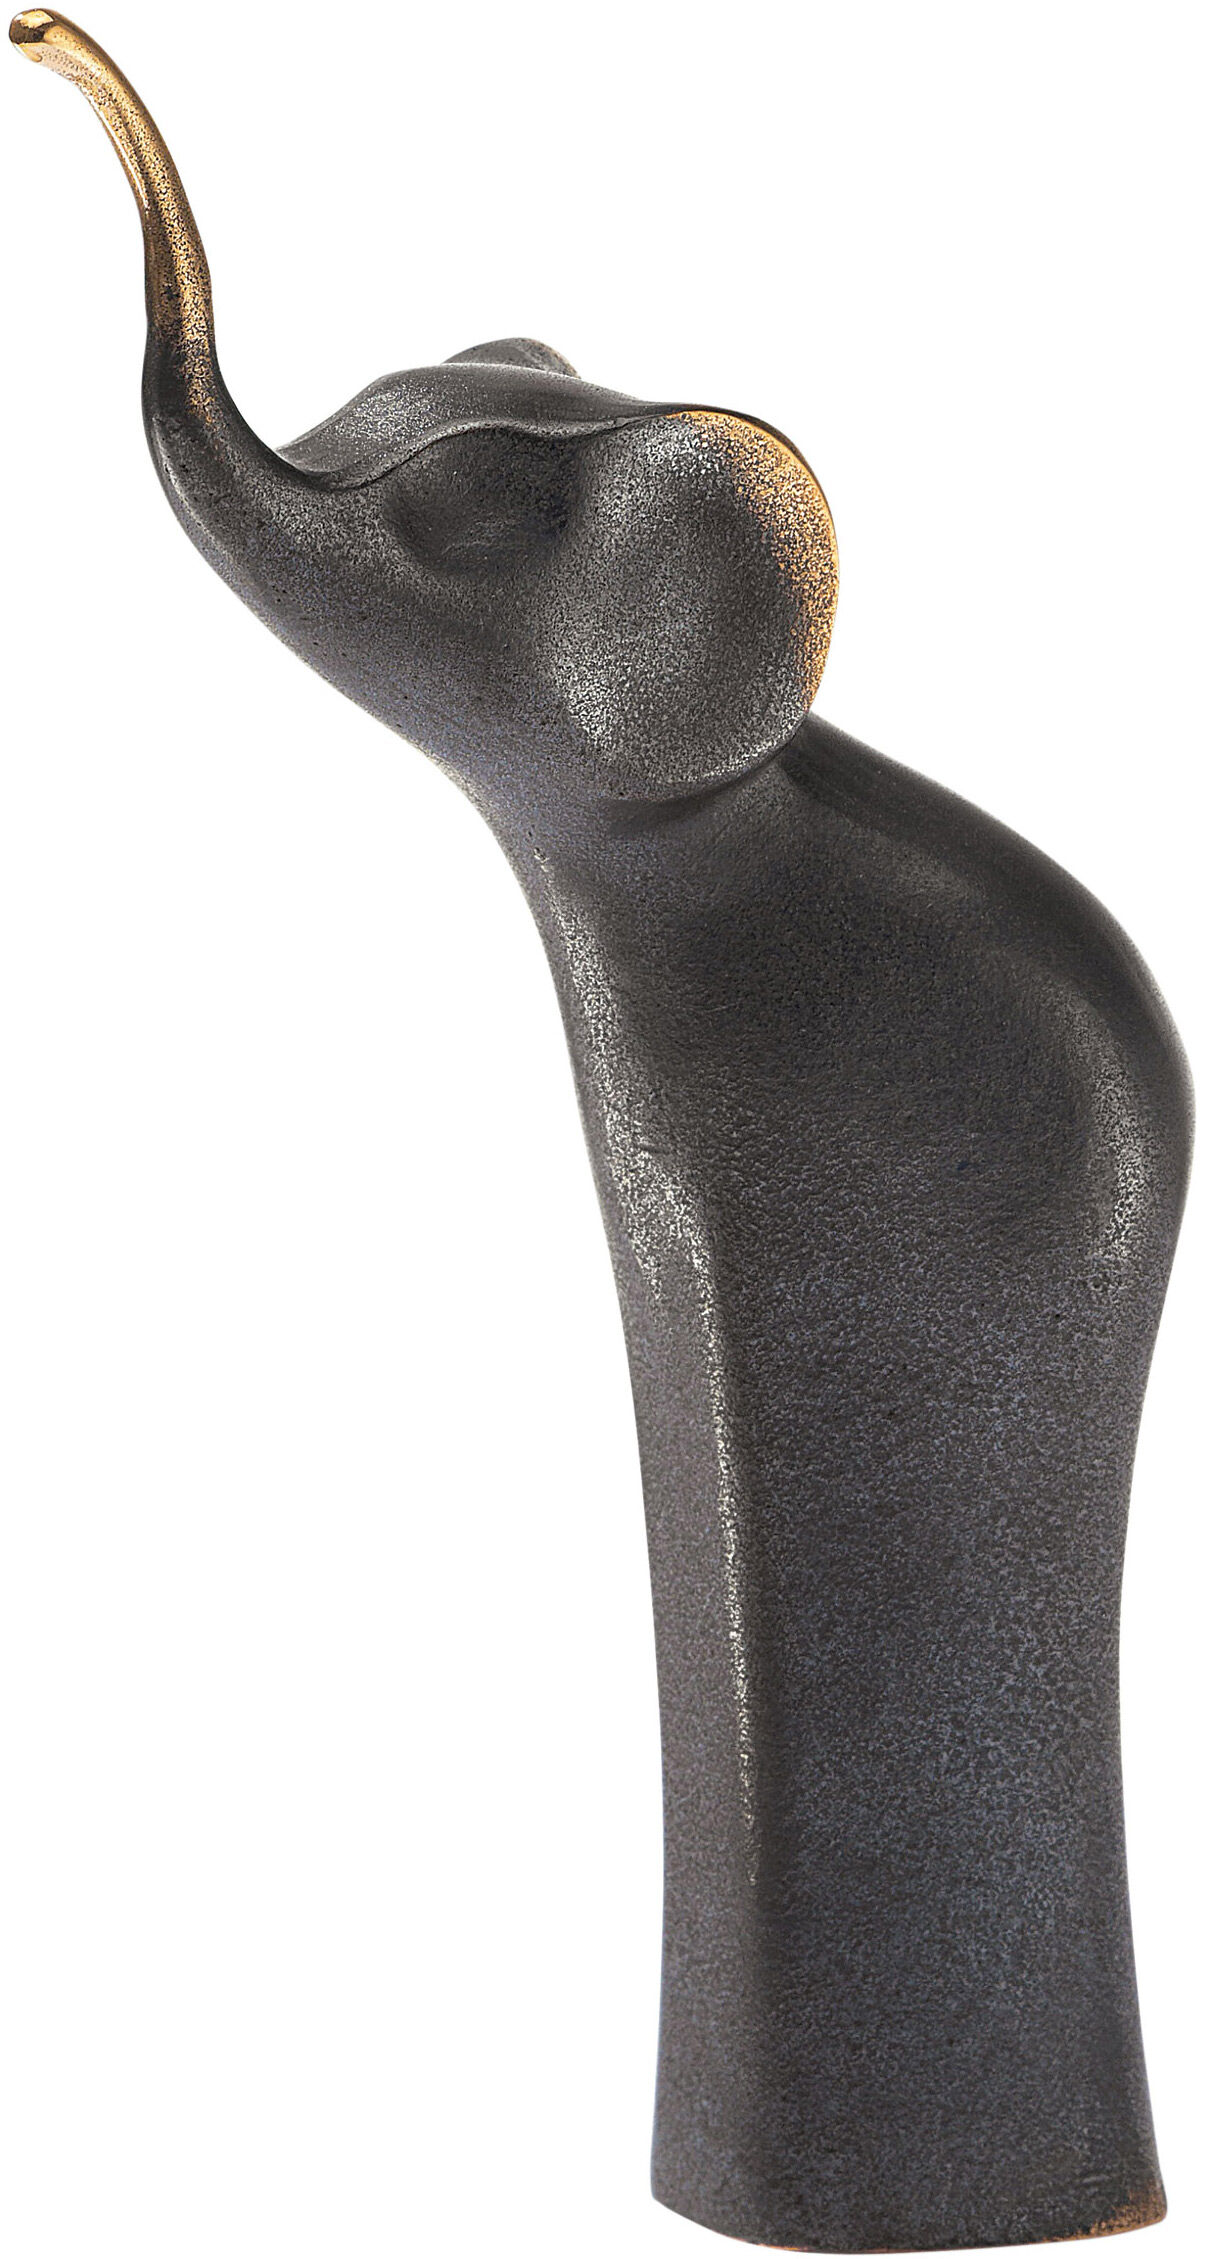 Dyreskulptur "Elefant", bronze von Kerstin Stark